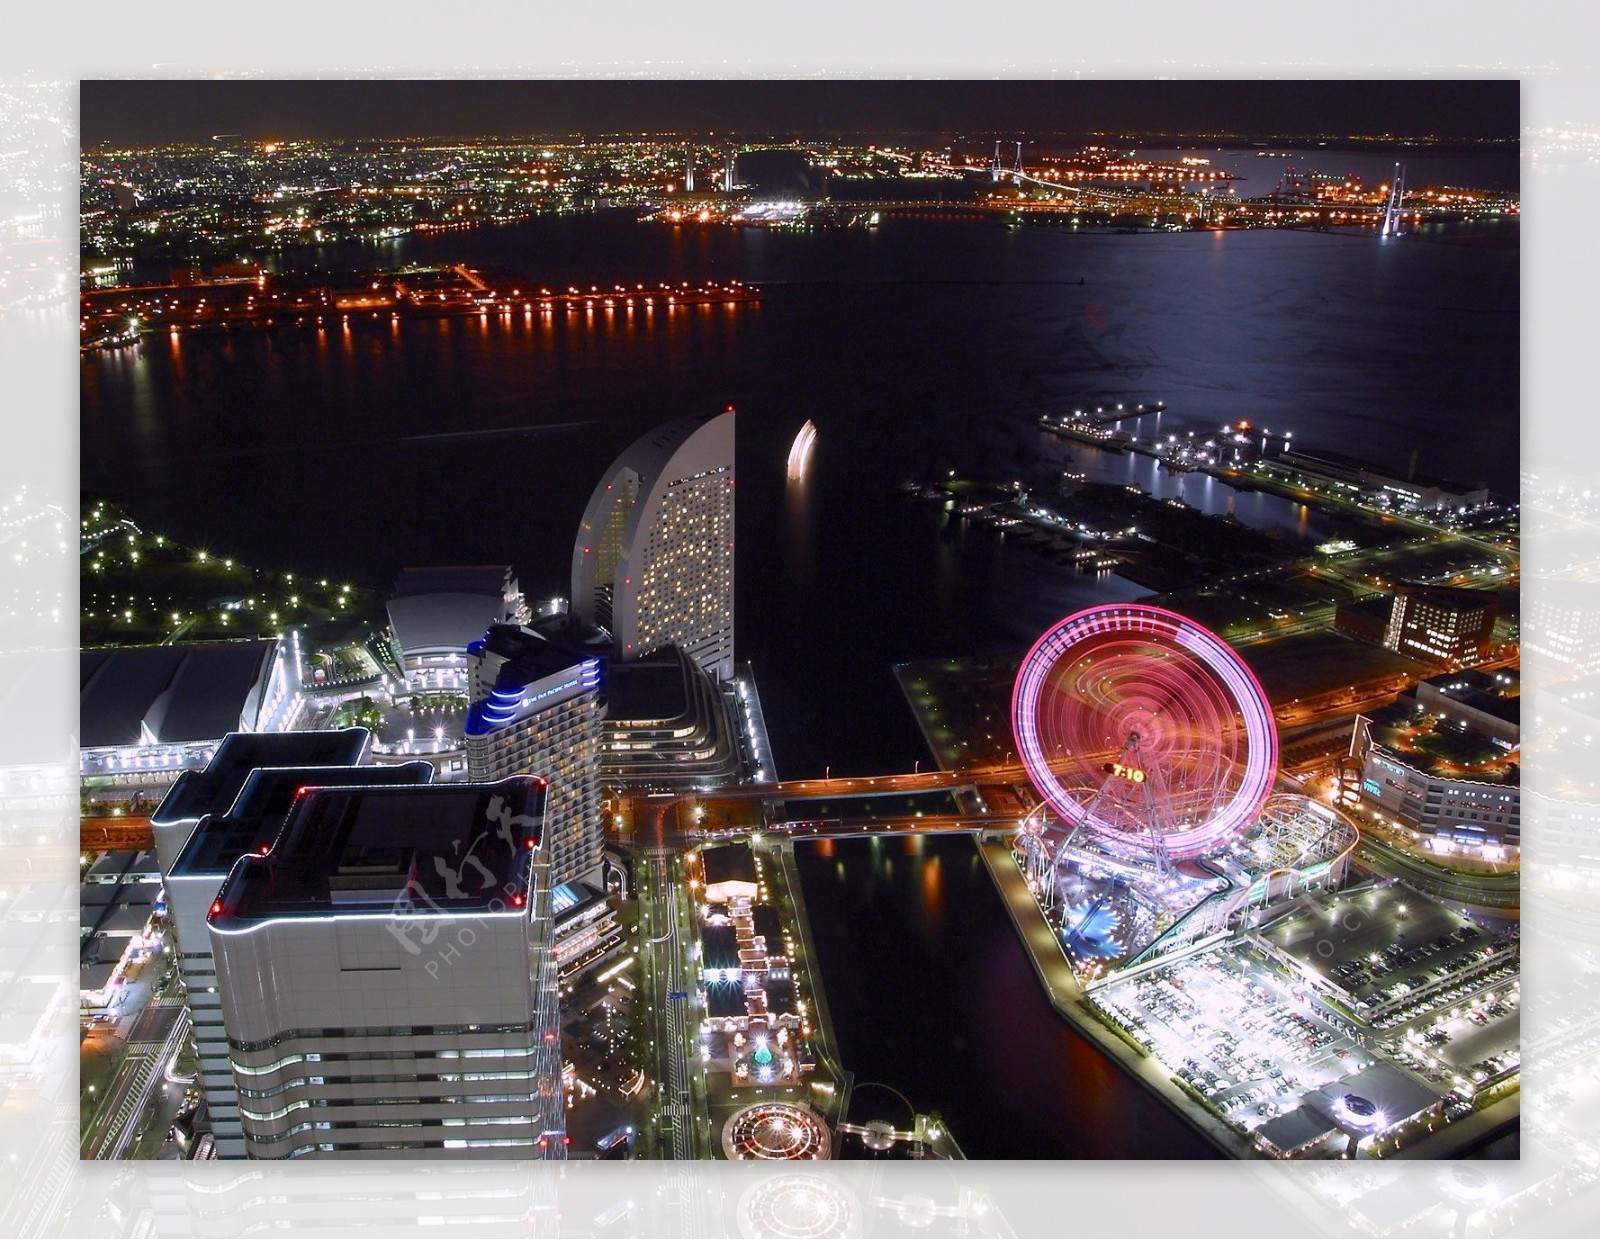 超眩的城市摩天轮夜景高清图片素材